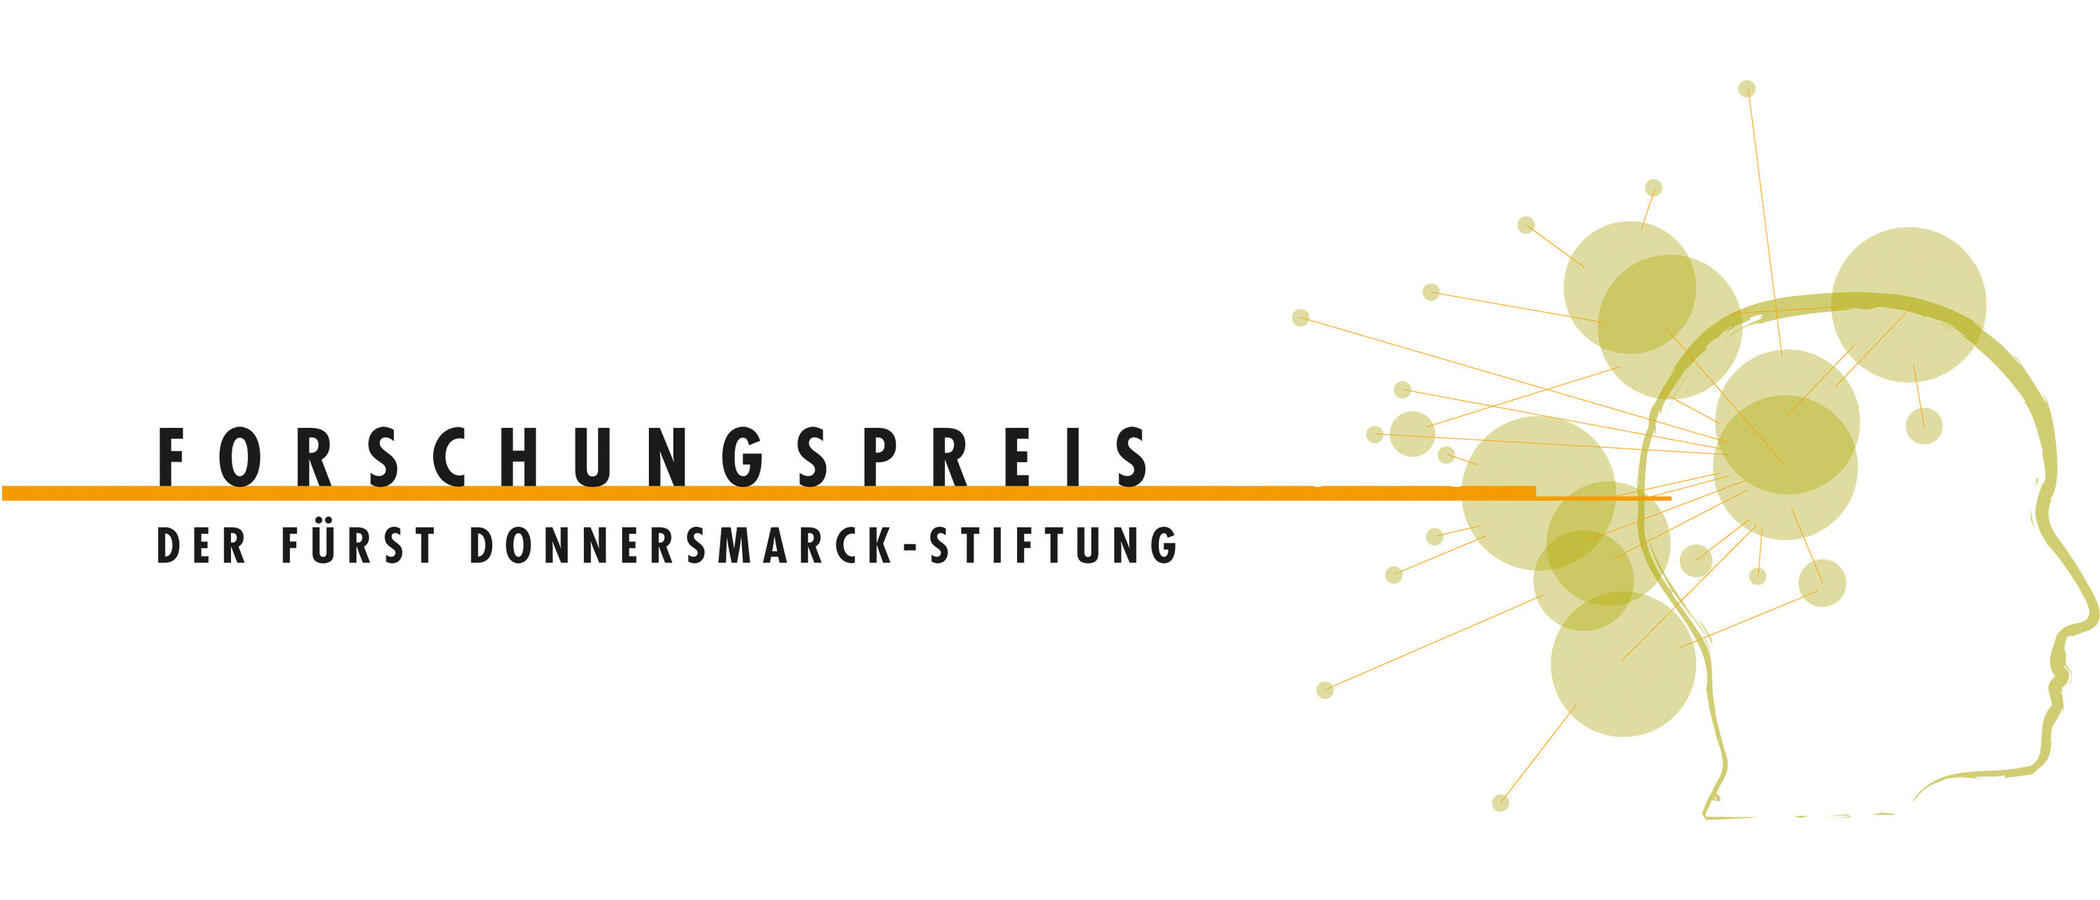 Das Logo des Forschungspreises - ein stilisierter Kopf im Profil mit mehreren Kreisen und Linien um ihn herum - daneben der Schriftzug: "Forschungspreis der Fürst Donnersmarck-Stiftung"